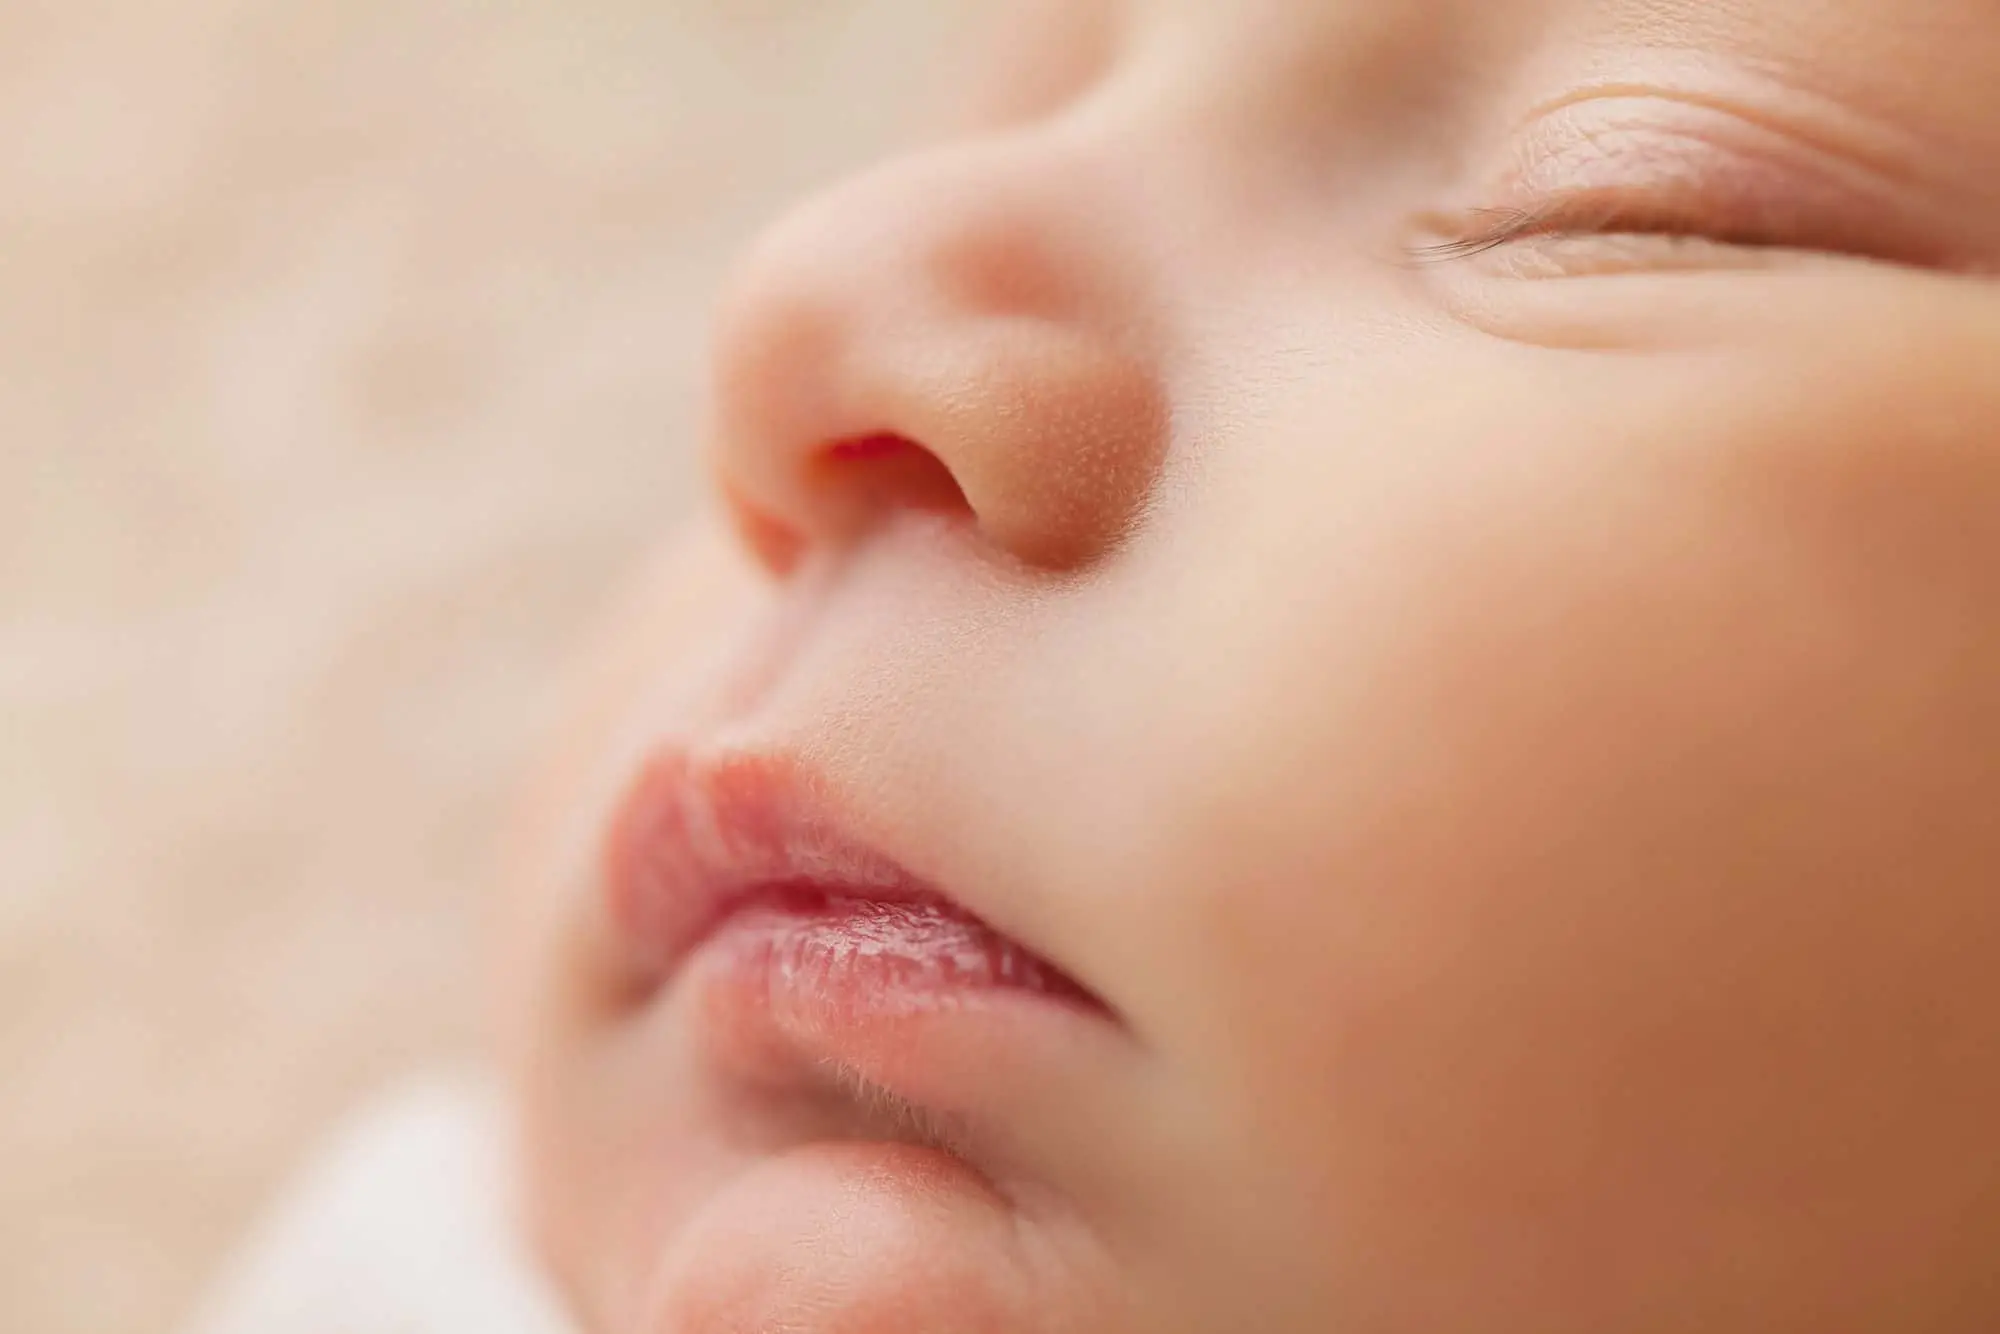 bebes que han tenido anemia no son muy i inteligentes - Qué consecuencias tiene la anemia en bebés